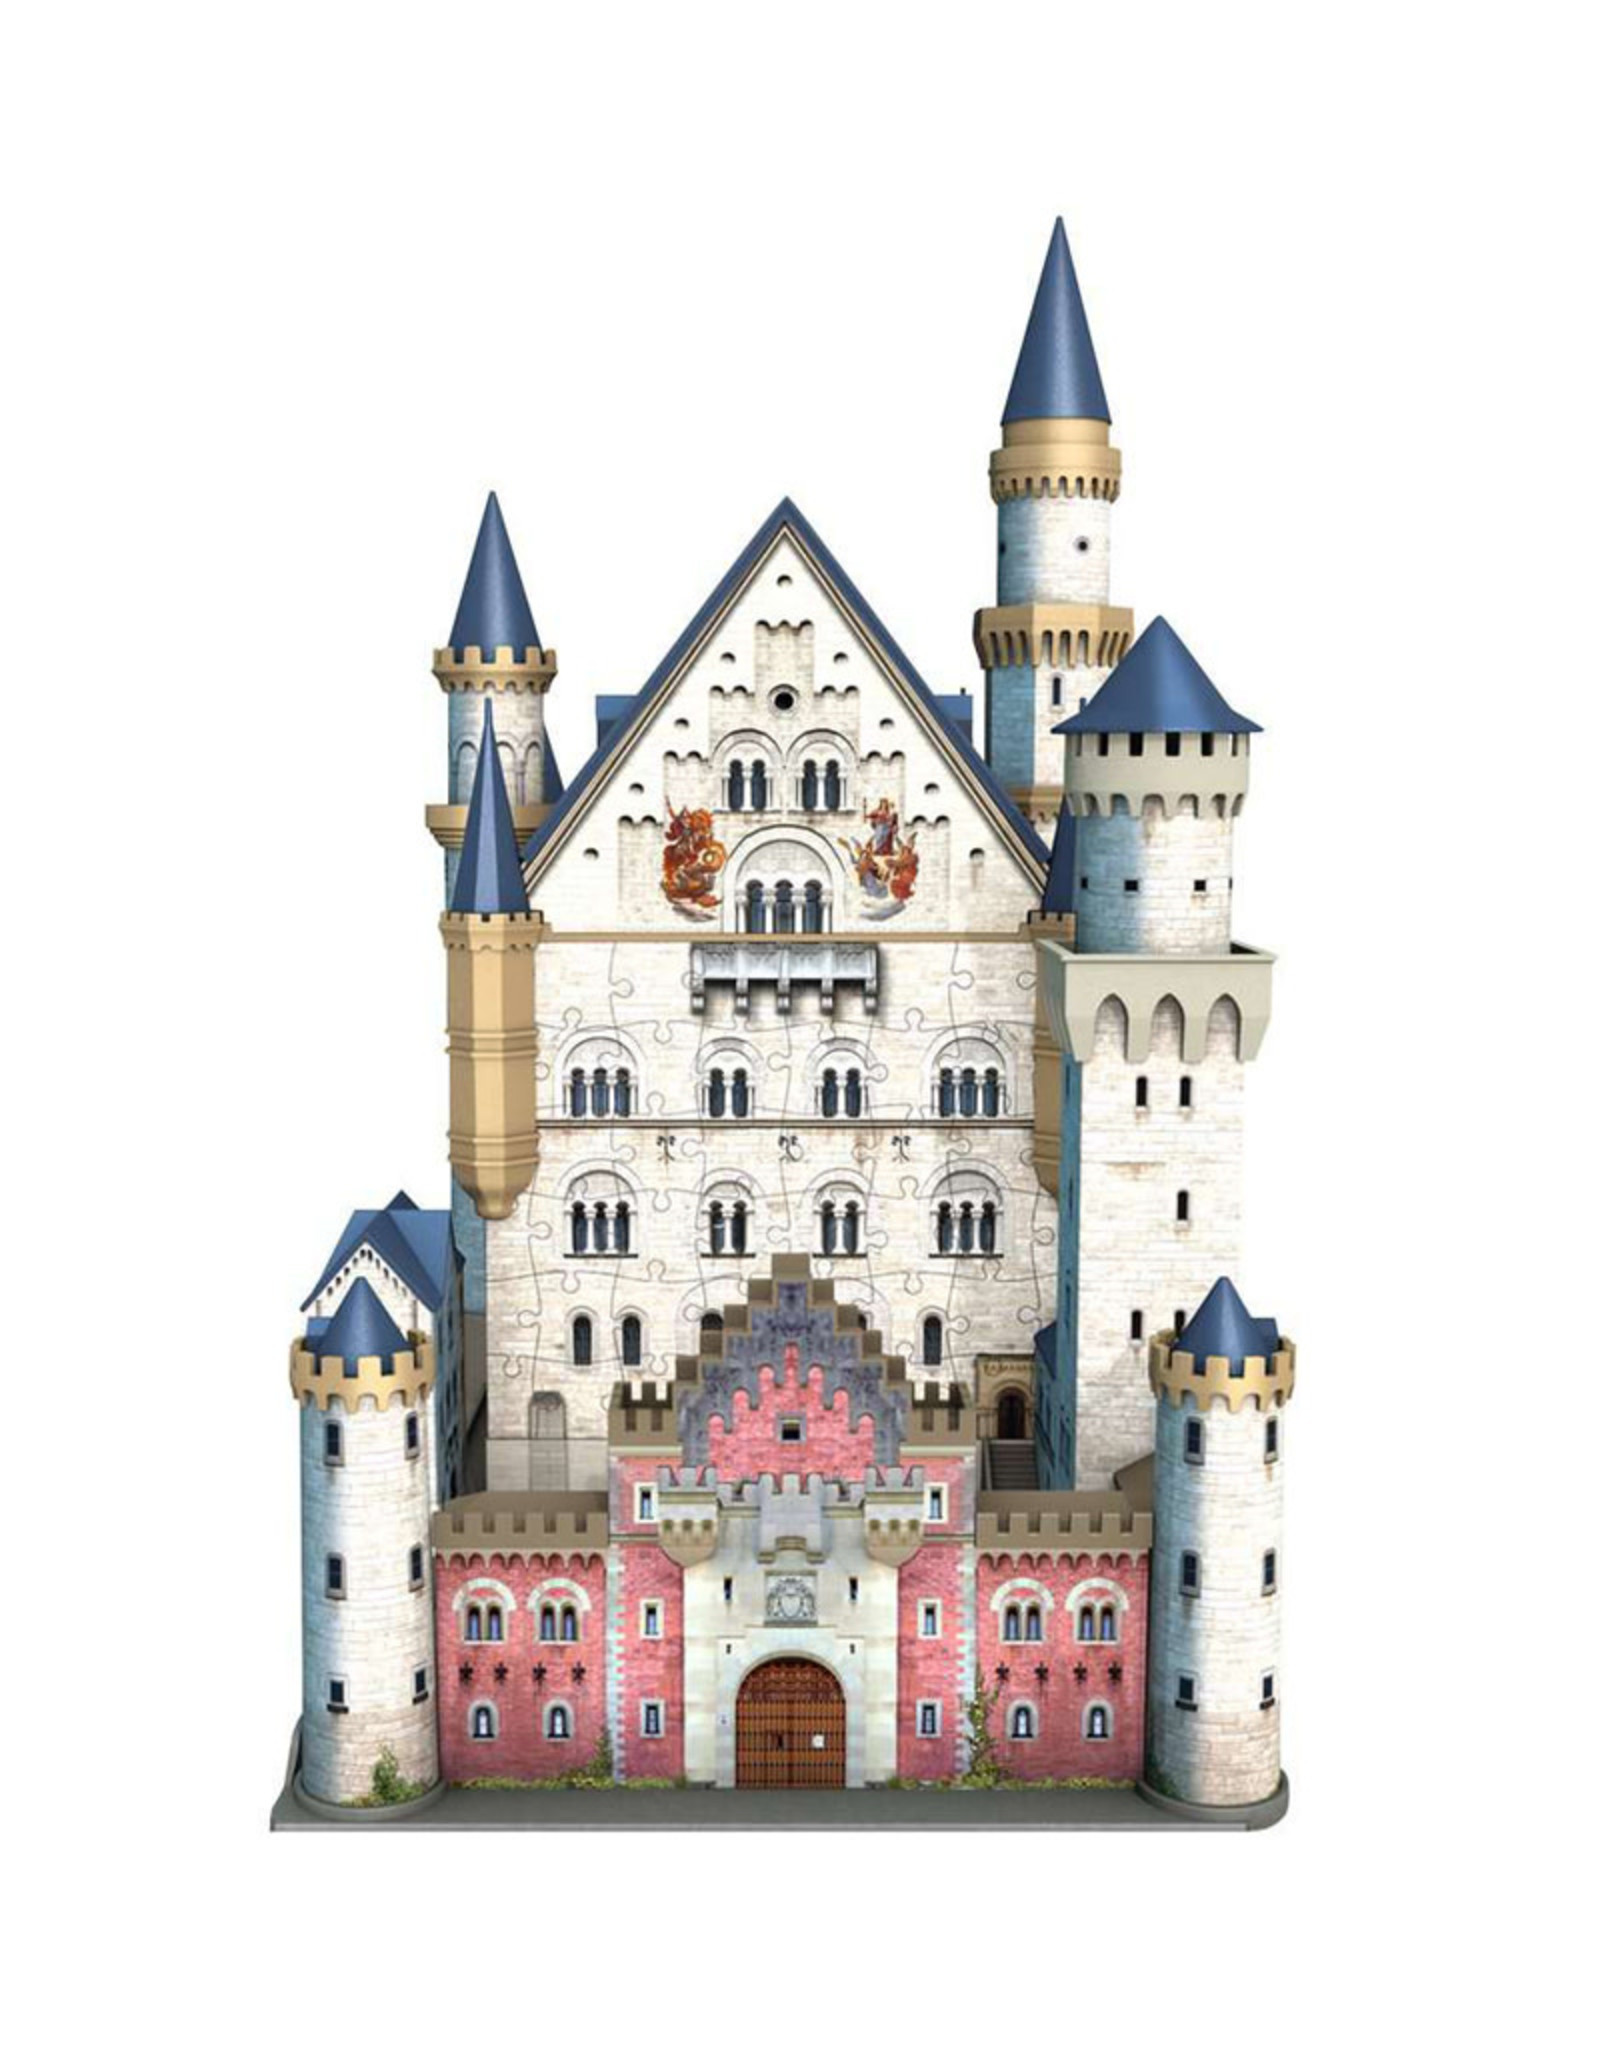 Ravensburger Neuschwanstein Castle 3D Puzzle 216 PCS